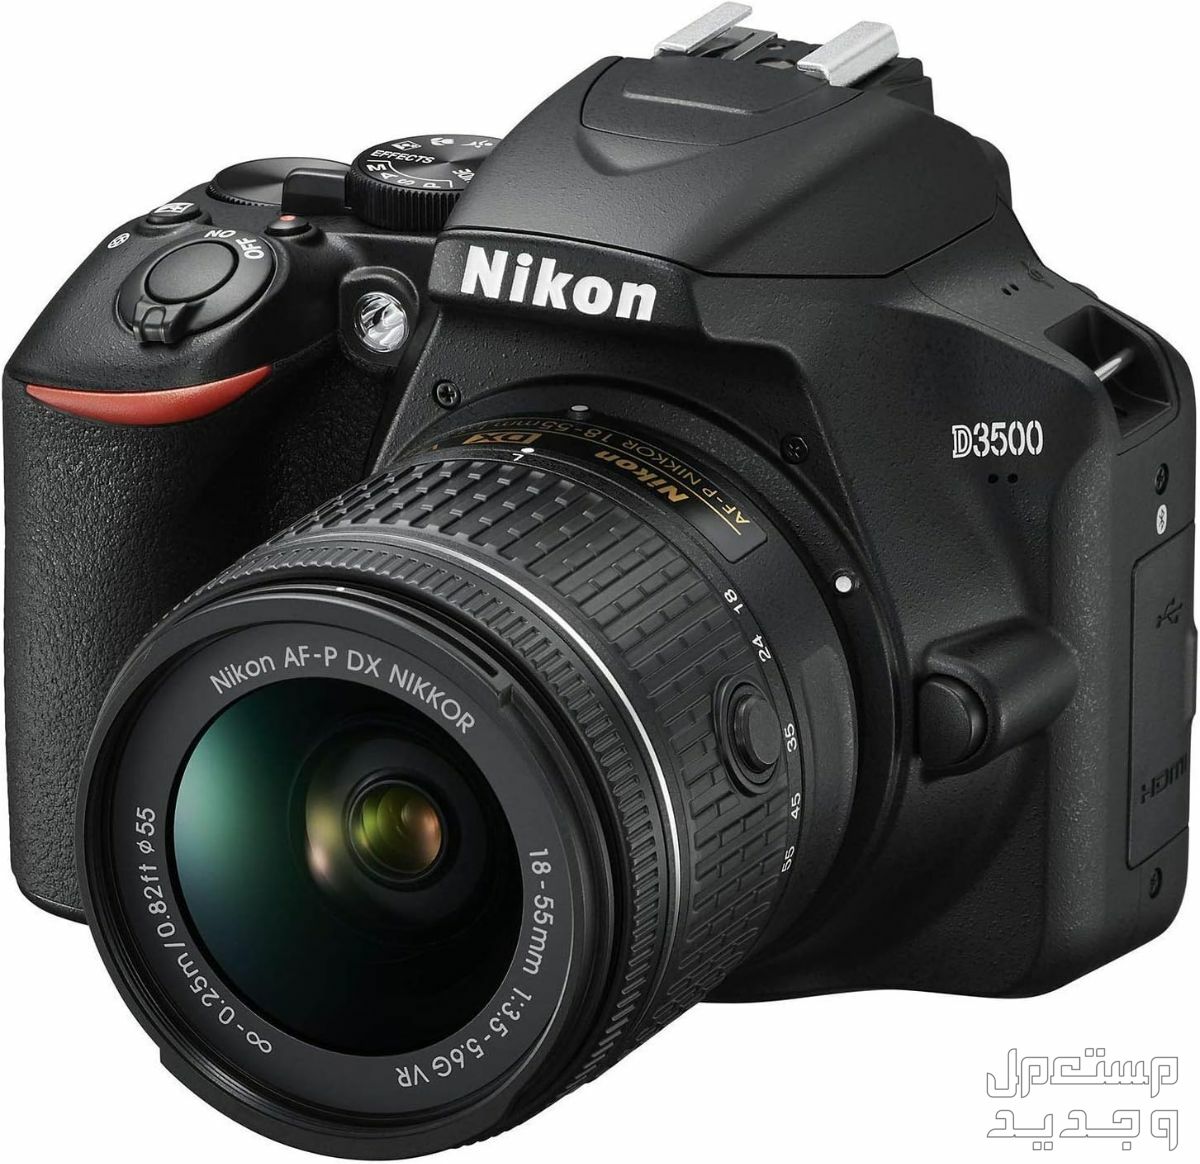 10 كاميرات تصوير ماركات عالمية بأسعار رخيصة في الكويت مميزات كاميرا Nikon D3500